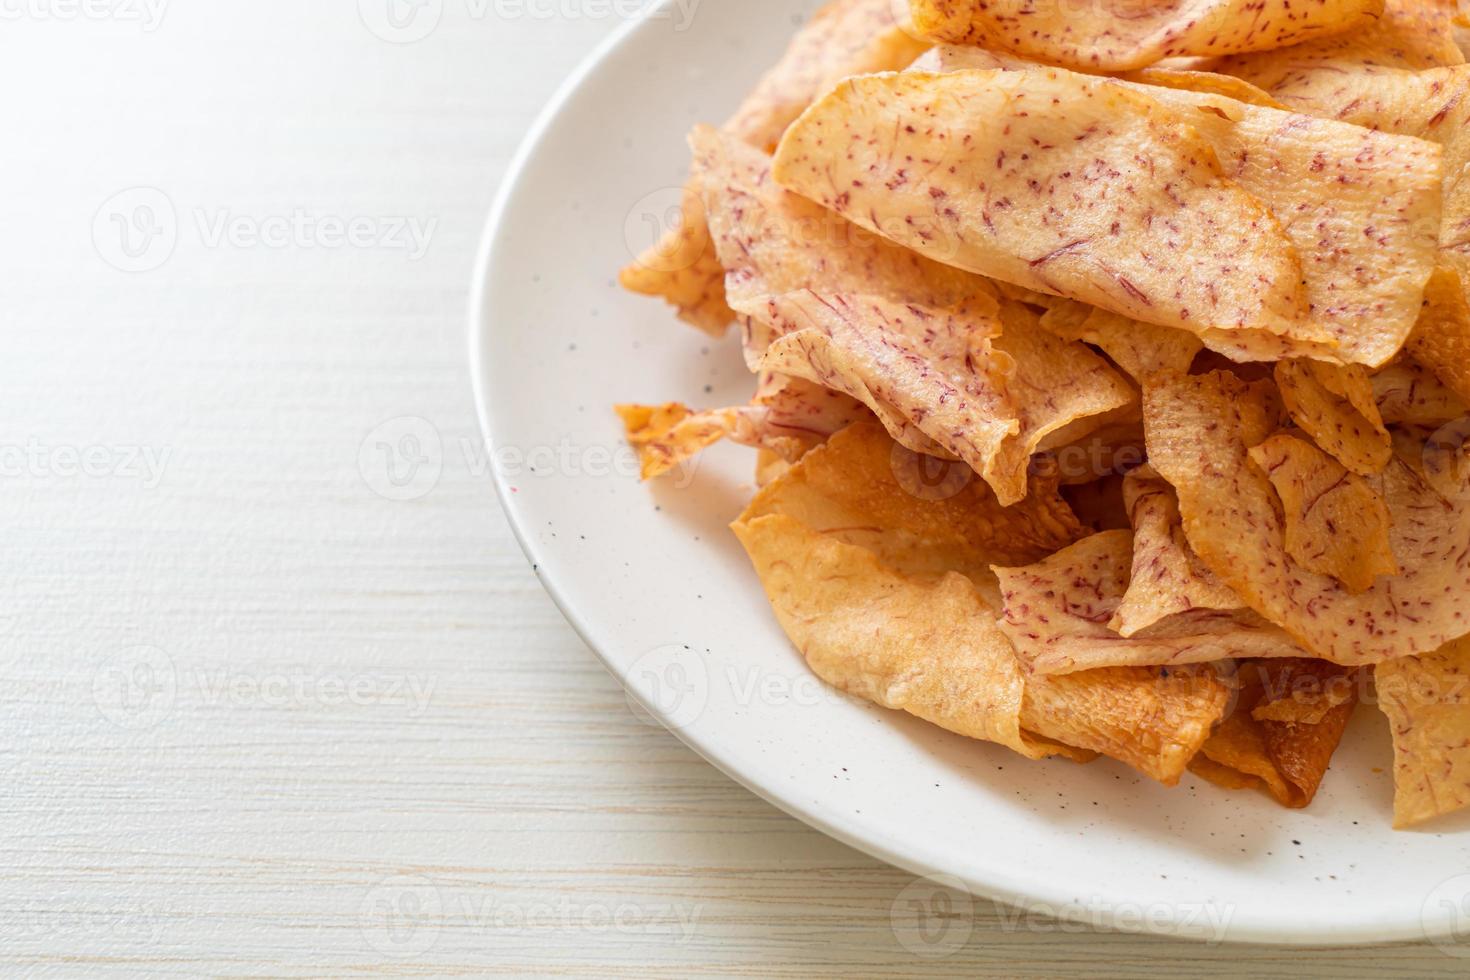 taro chips - stekt eller bakad skivad taro foto